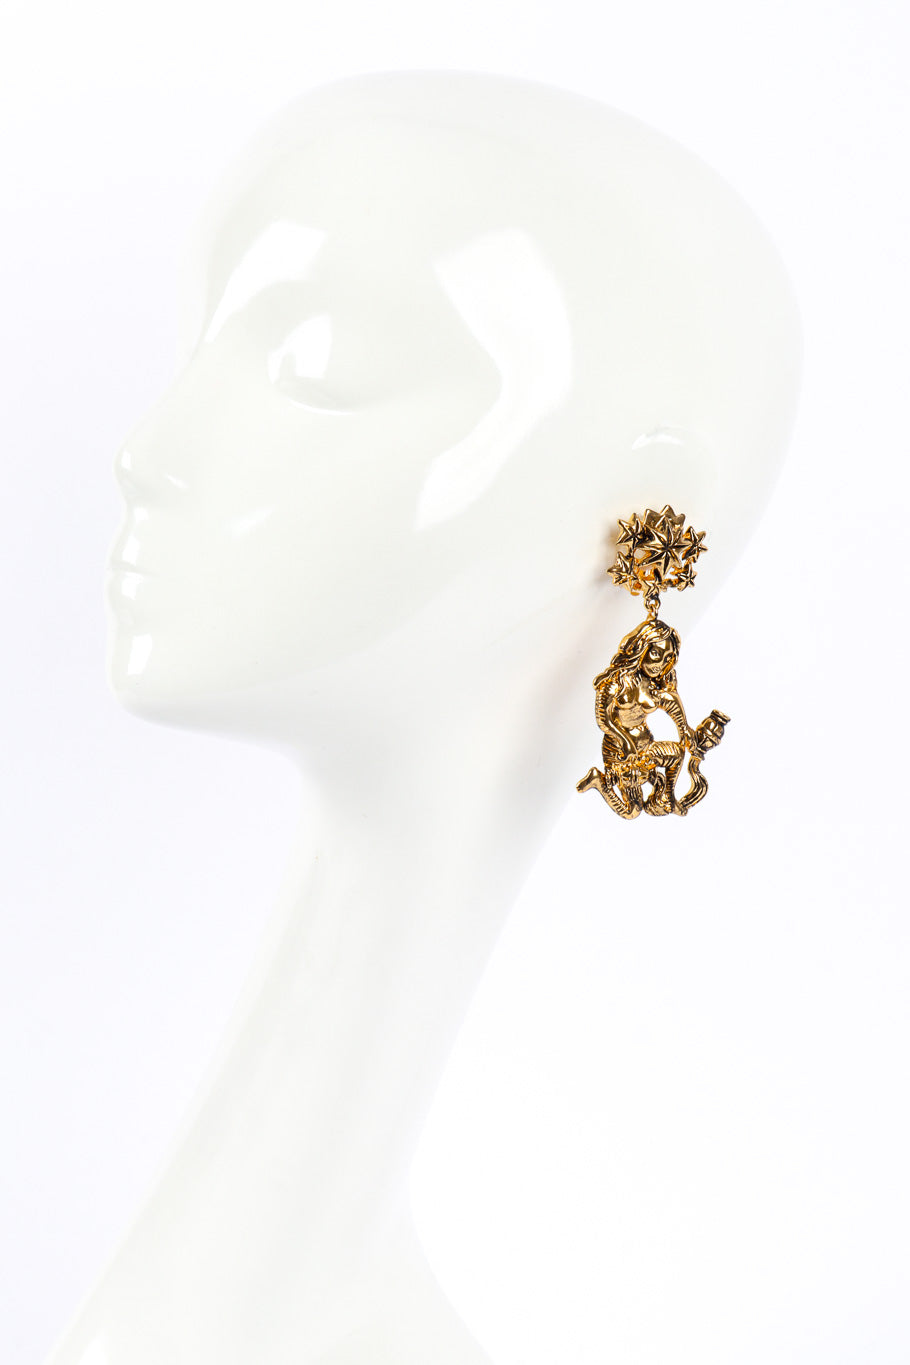 L’Etoile Aquarius Water Bearer Earrings by Isabel Canovas on mannequin head @recessla